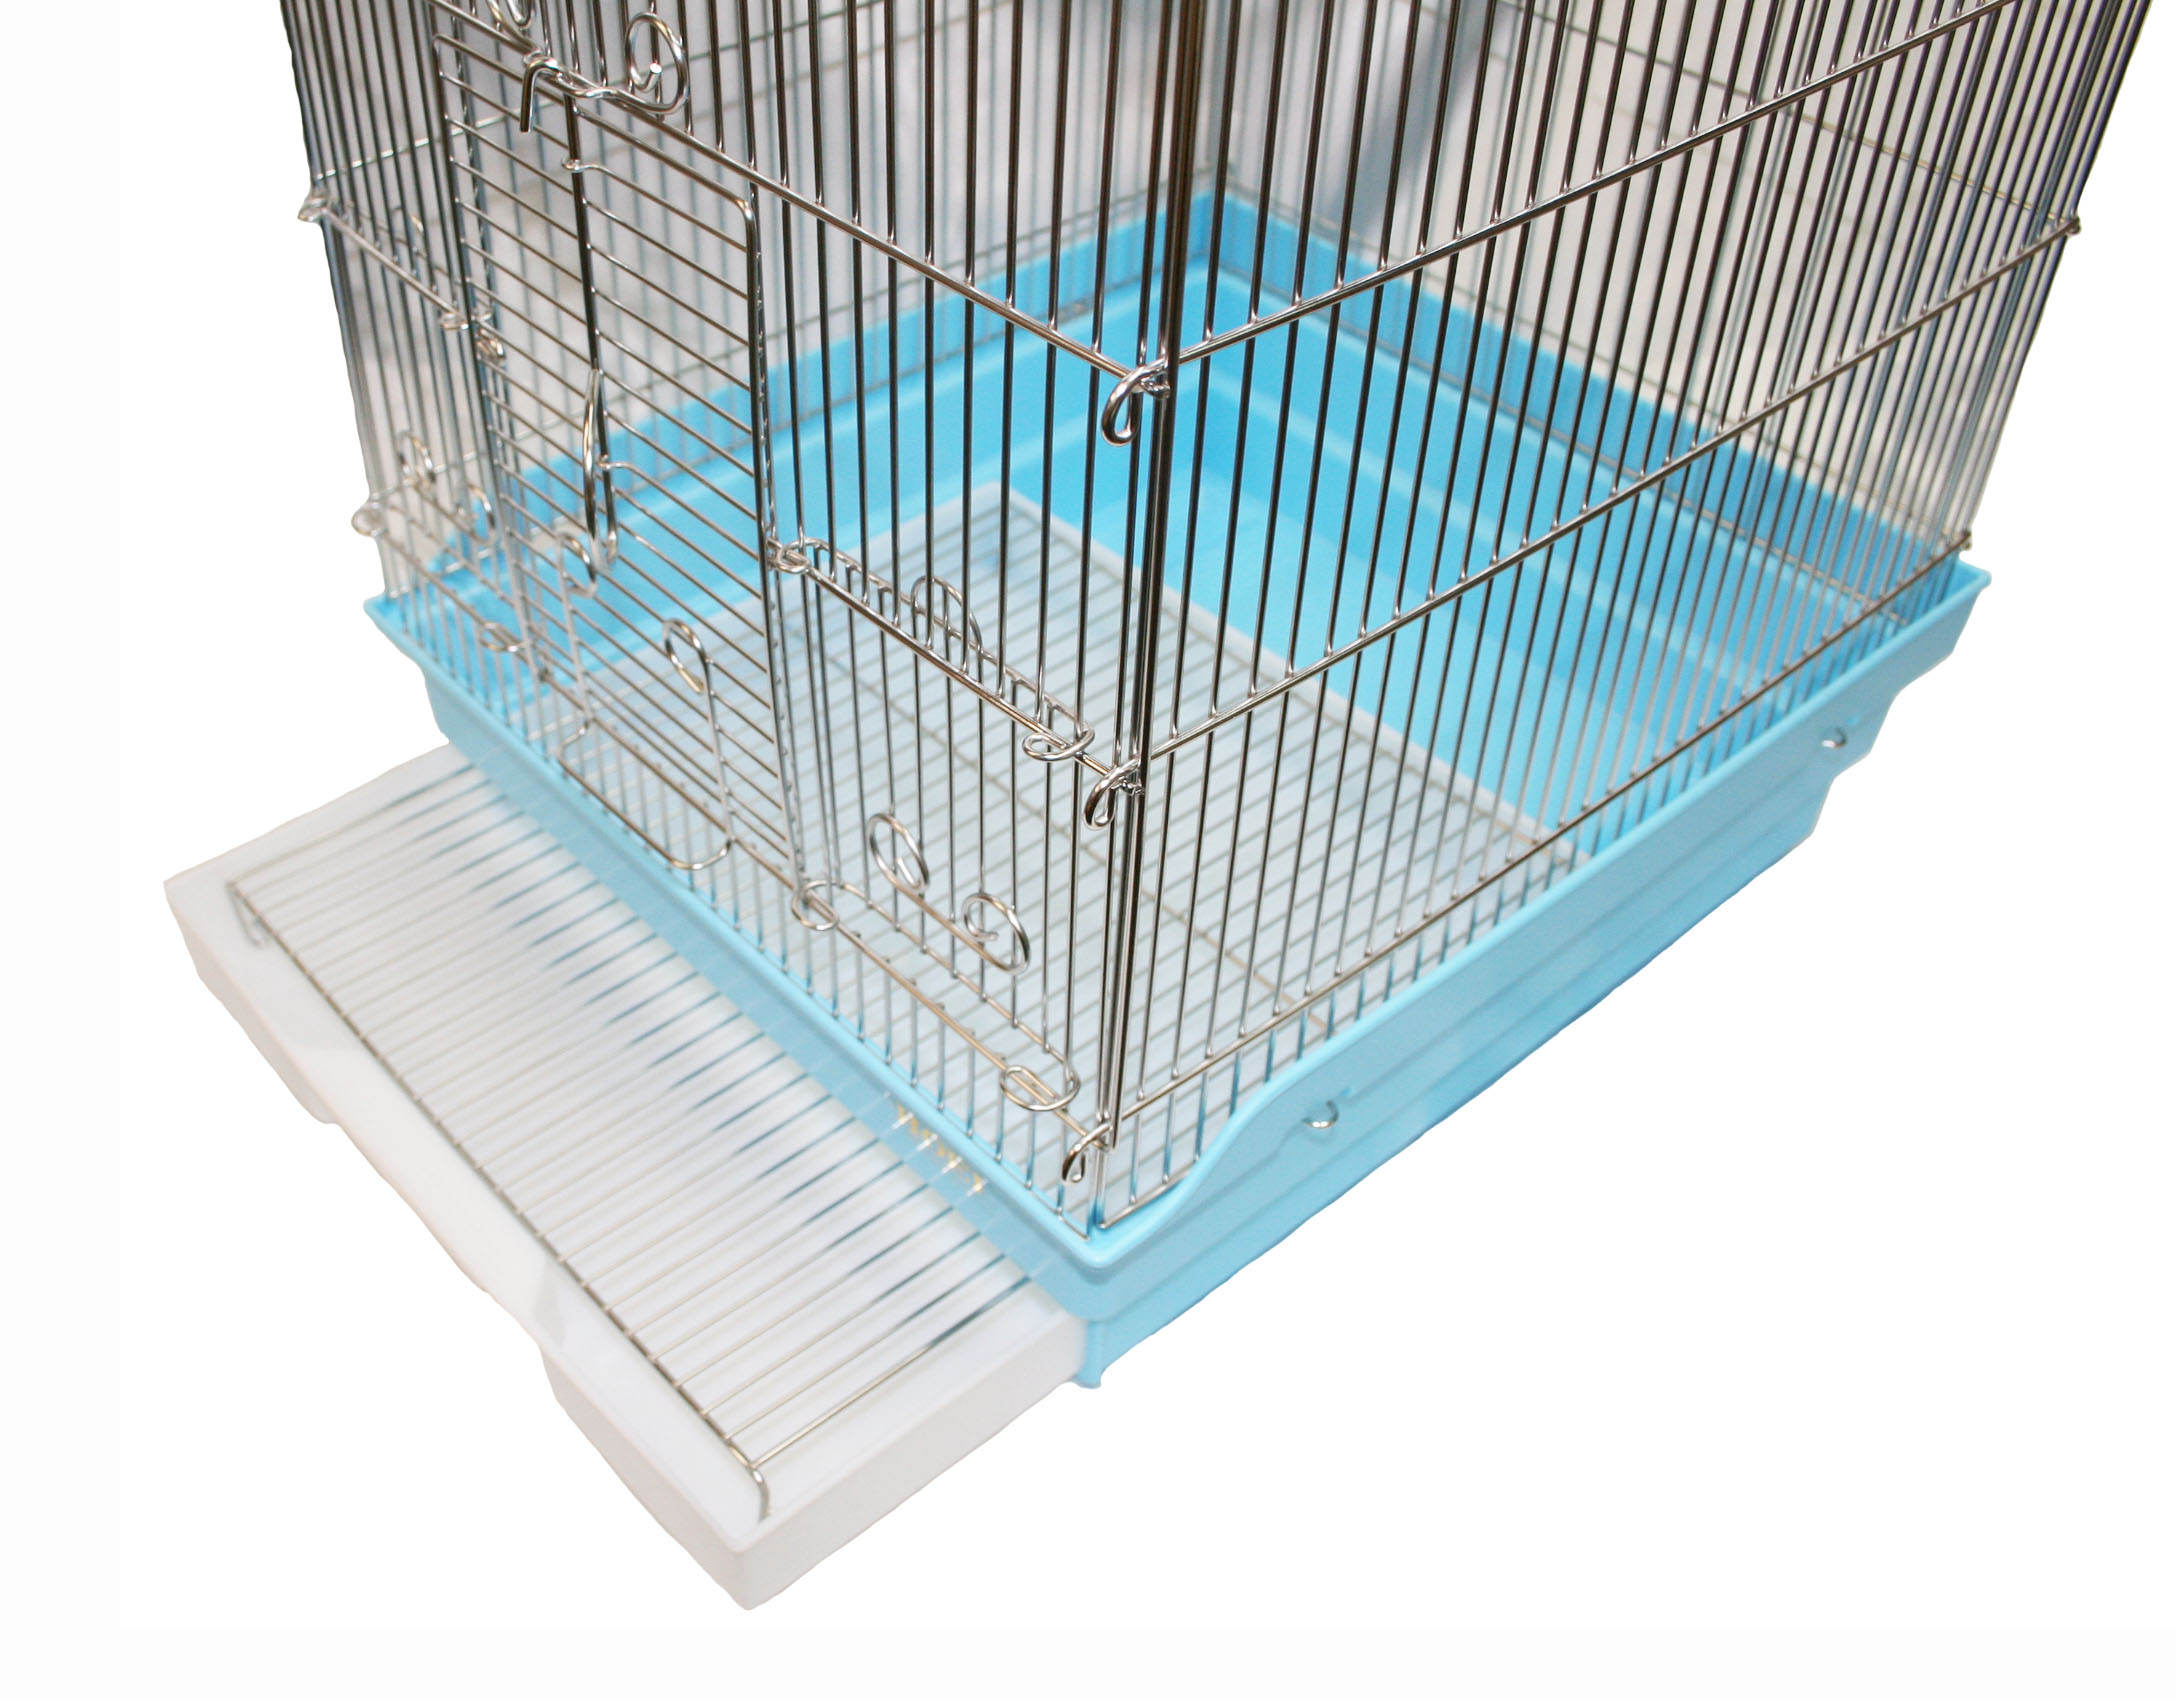 HOEI 35 рука клей G ( серебряный цвет металлизированный ) голубой низ ( клетка для птиц, клетка )